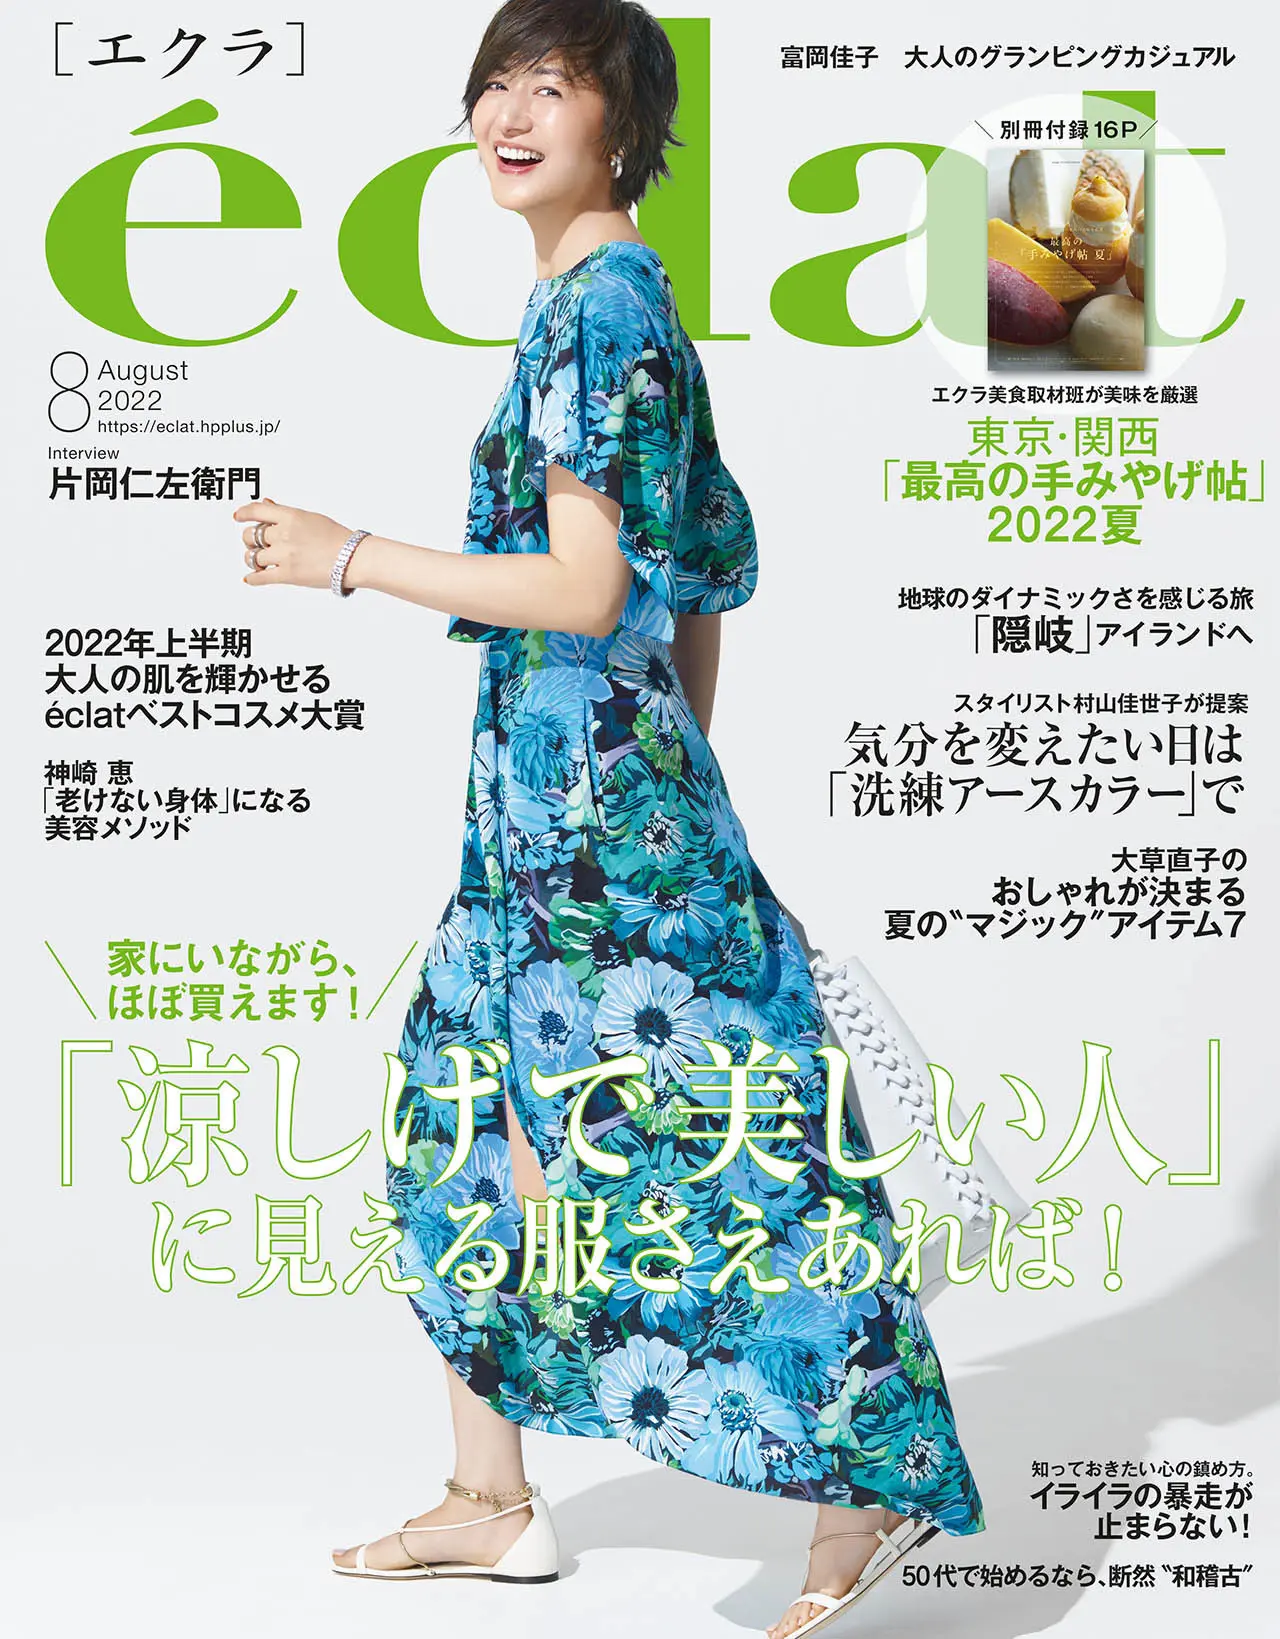 エクラ8月号表紙。カバーモデルは富岡佳子さん。